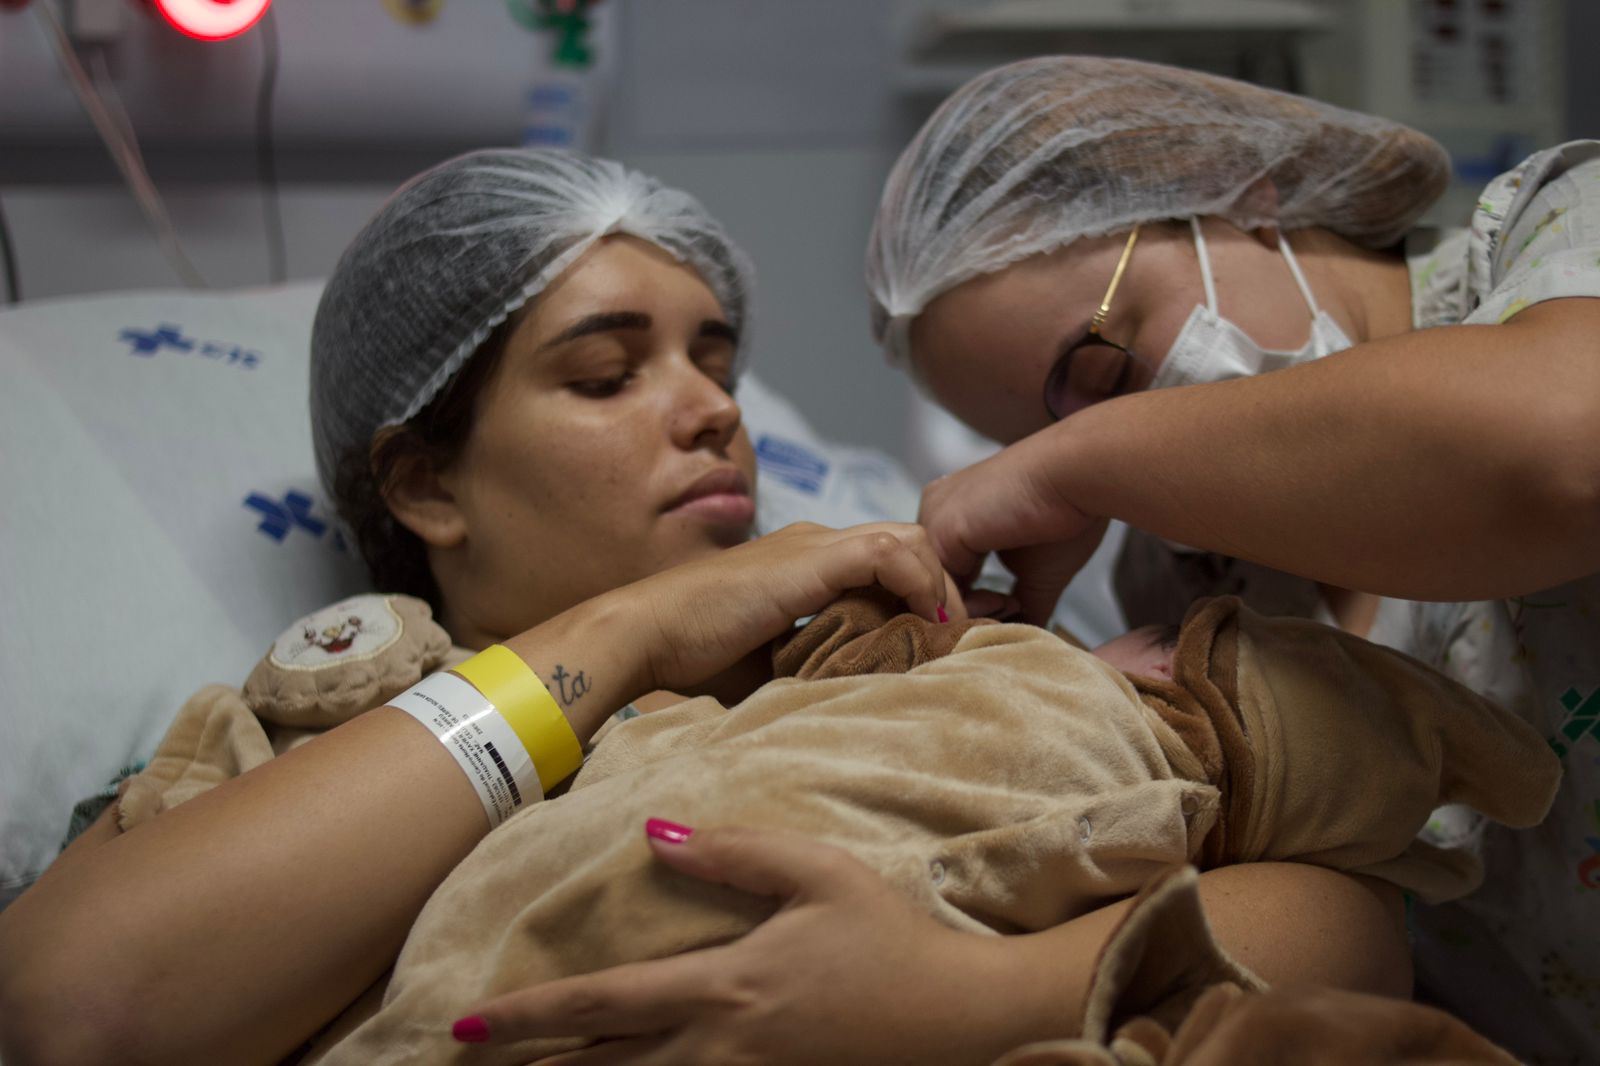 Fotos - Divulgação HCN - Mãe recebe bebê após parto natural, sem dor, no Hospital de Uruaçu. Técnica inovadora foi desenvolvida por anestesiologista da unidade de saúde